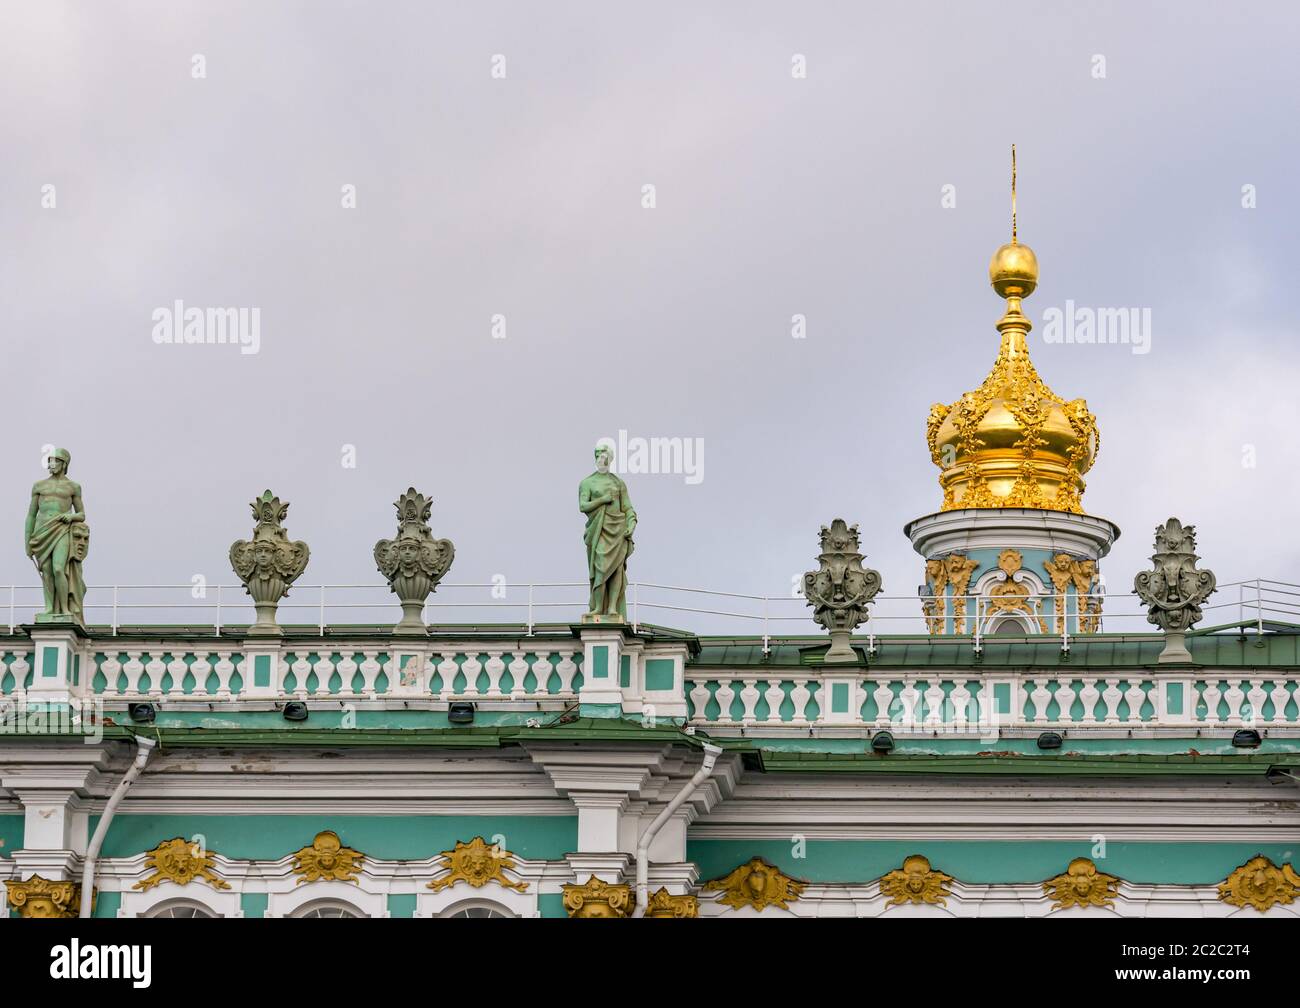 Toit du Palais d'hiver avec sculptures classiques et dôme d'oignon doré, l'Hermitage, Saint-Pétersbourg, Russie Banque D'Images